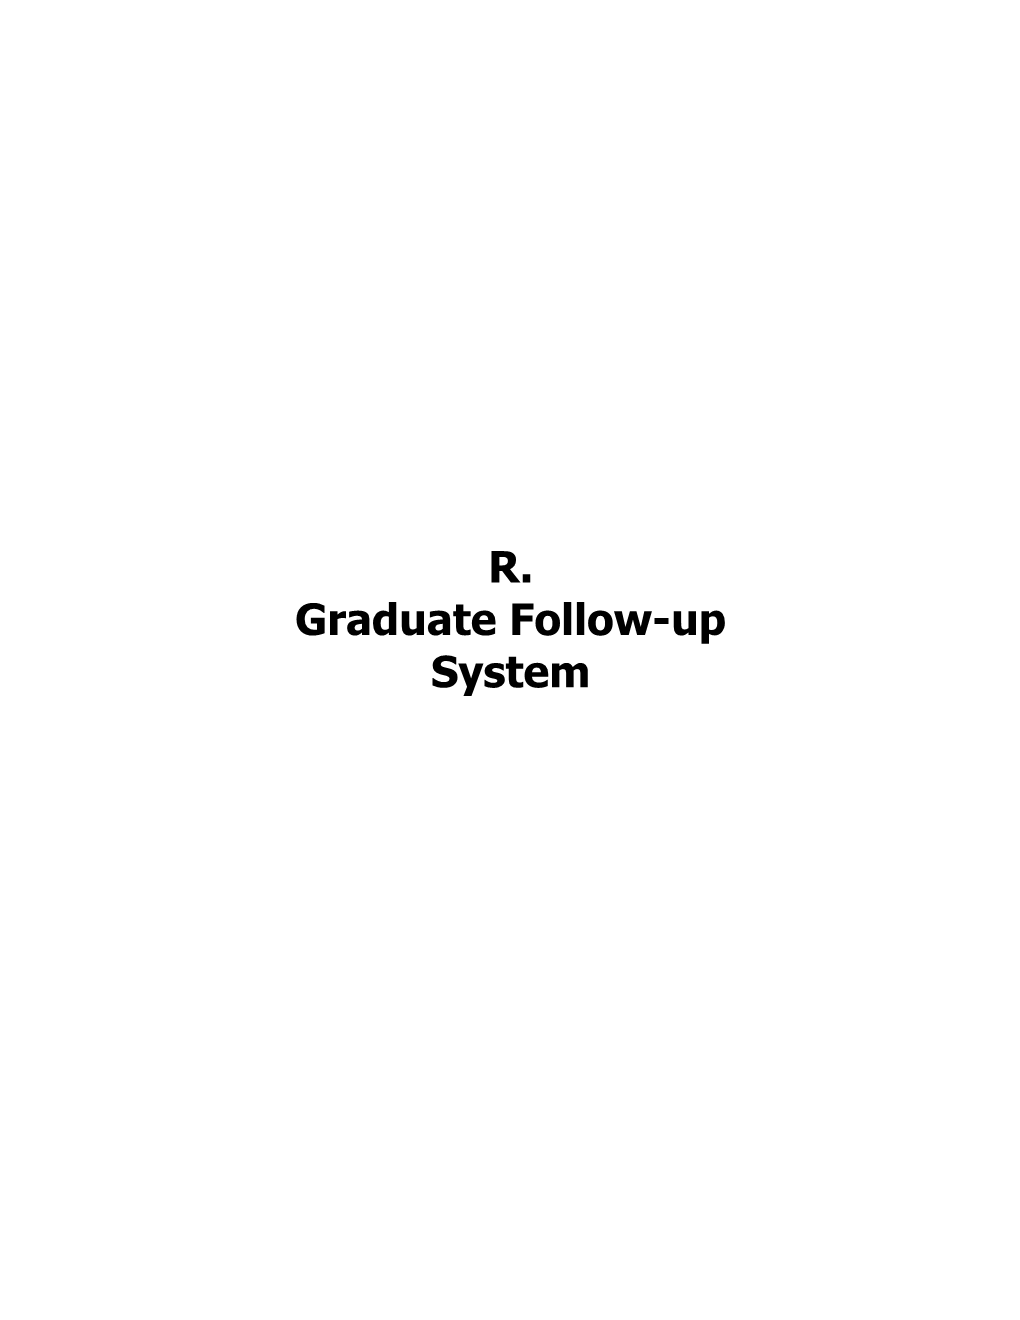 Graduate Follow-Up